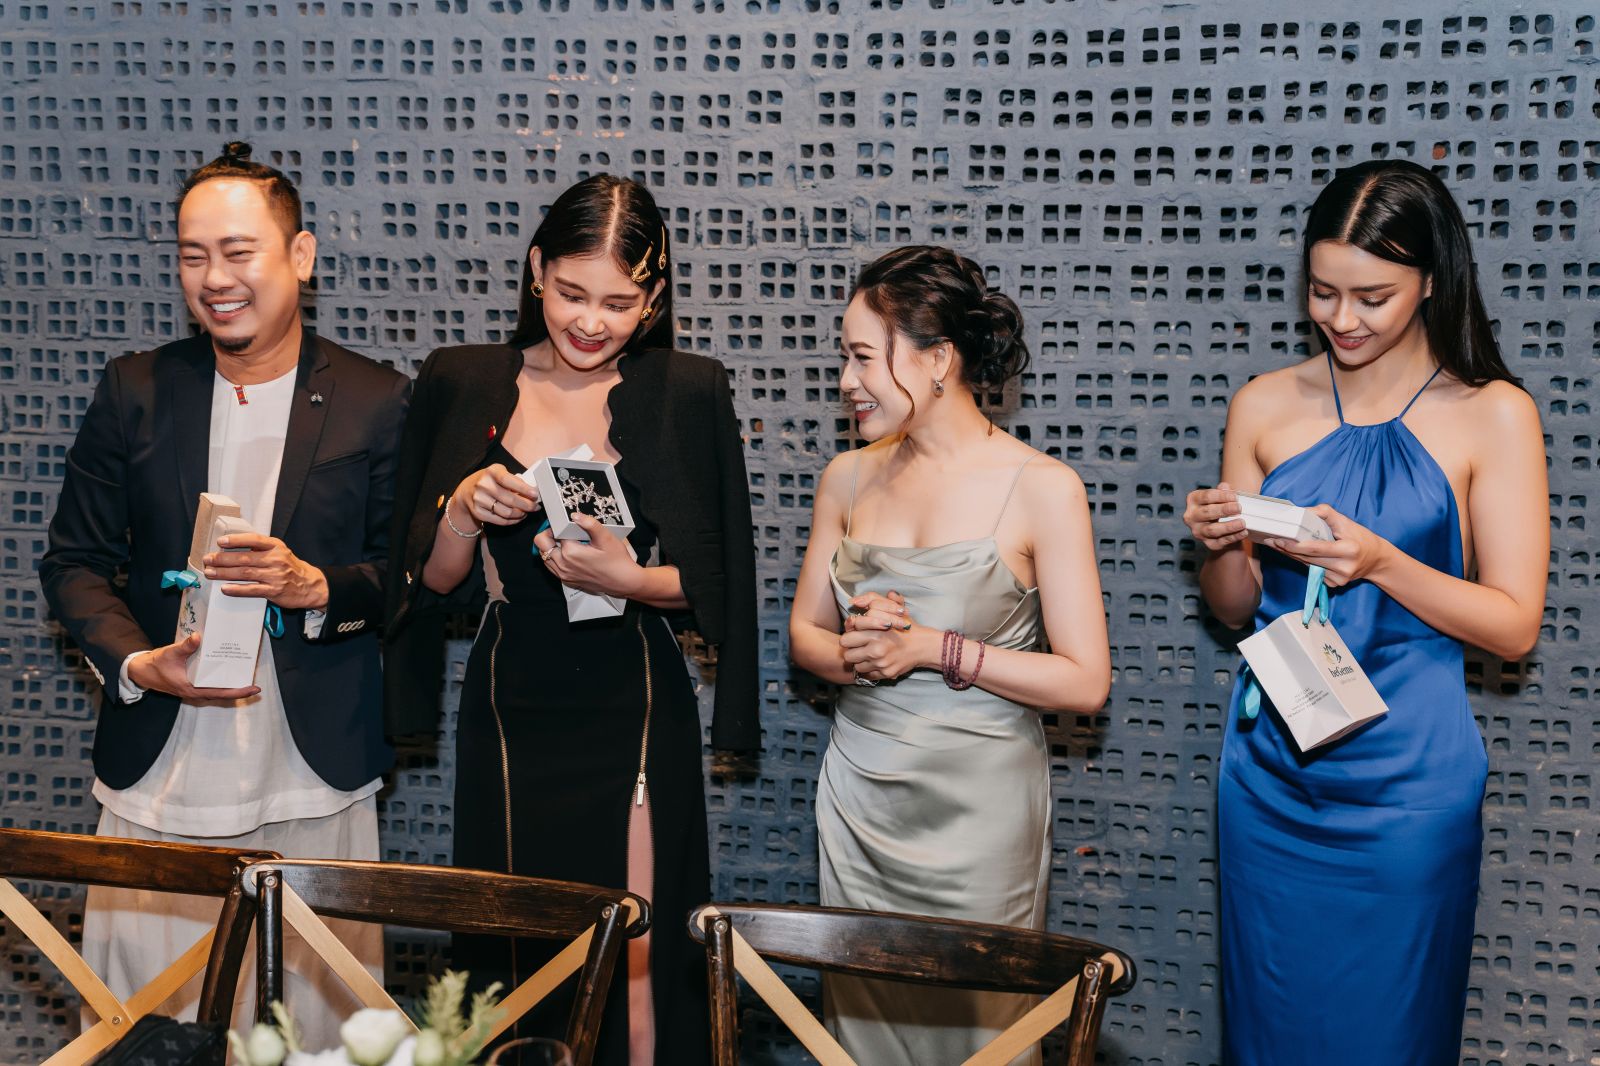 Hoa hậu Đại dương Việt Nam 2017 Lê Âu Ngân Anh (đầm đen) và Hoa hậu Hoàn Vũ Thái Lan 2020 Amanda Obdam (đầm xanh dương) bất ngờ trước món quà tặng của bà Nguyễn Thị Ngọc Anh – CEO & Founder beGems (đầm xanh lơ)